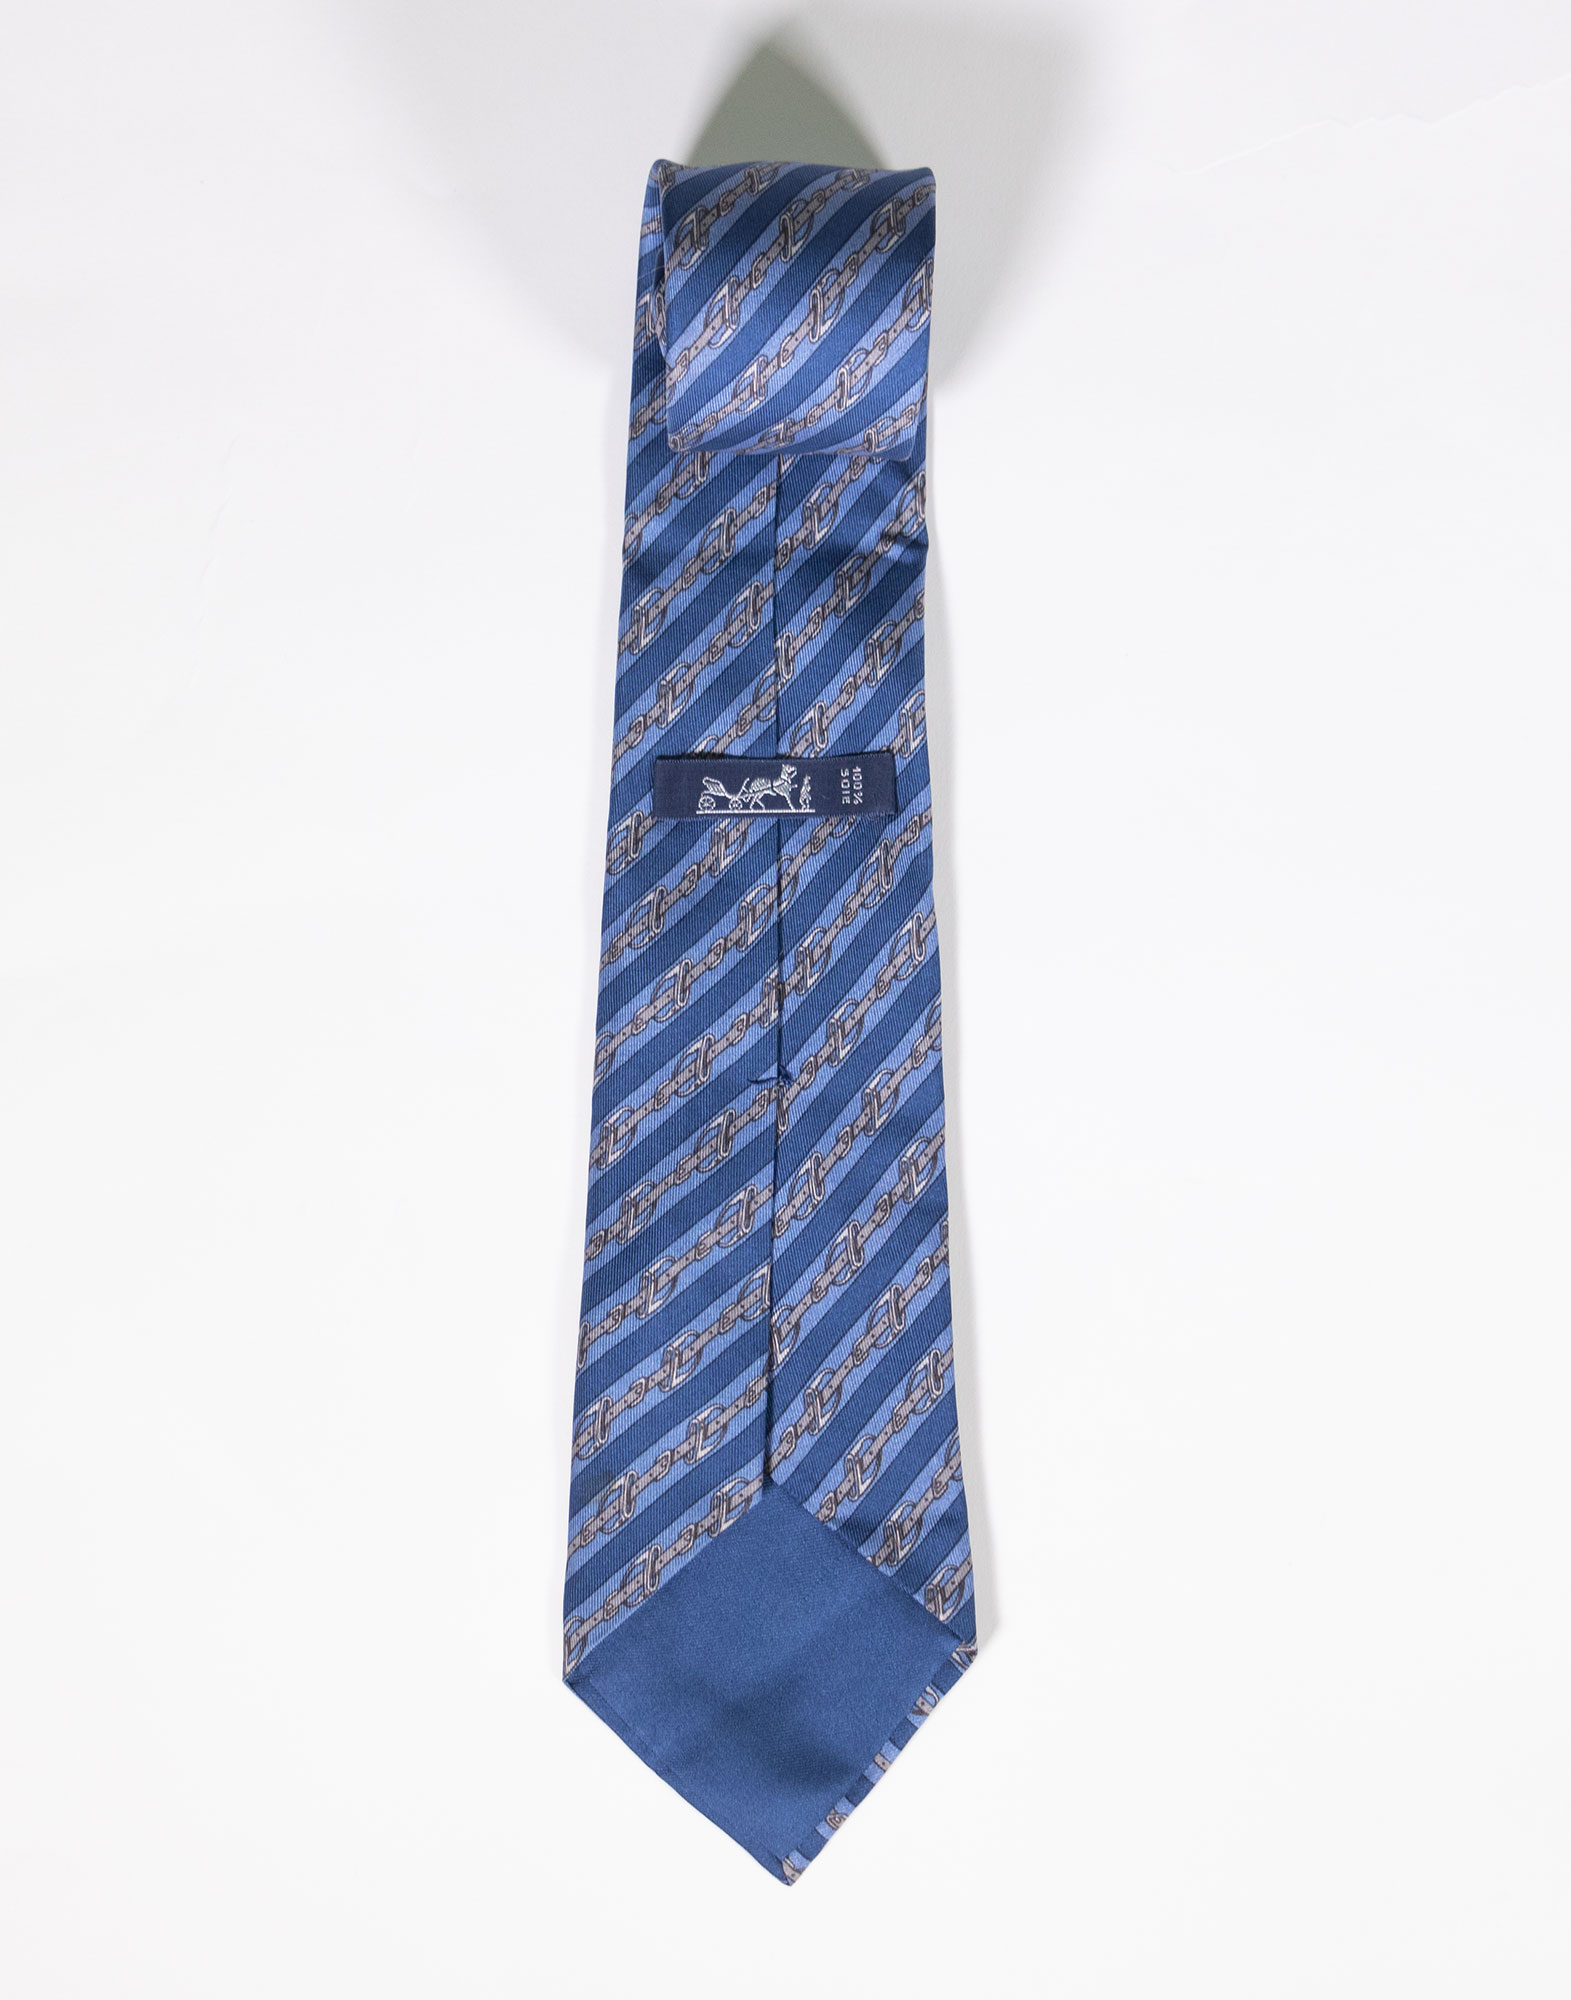 Hermes - 80s Necktie